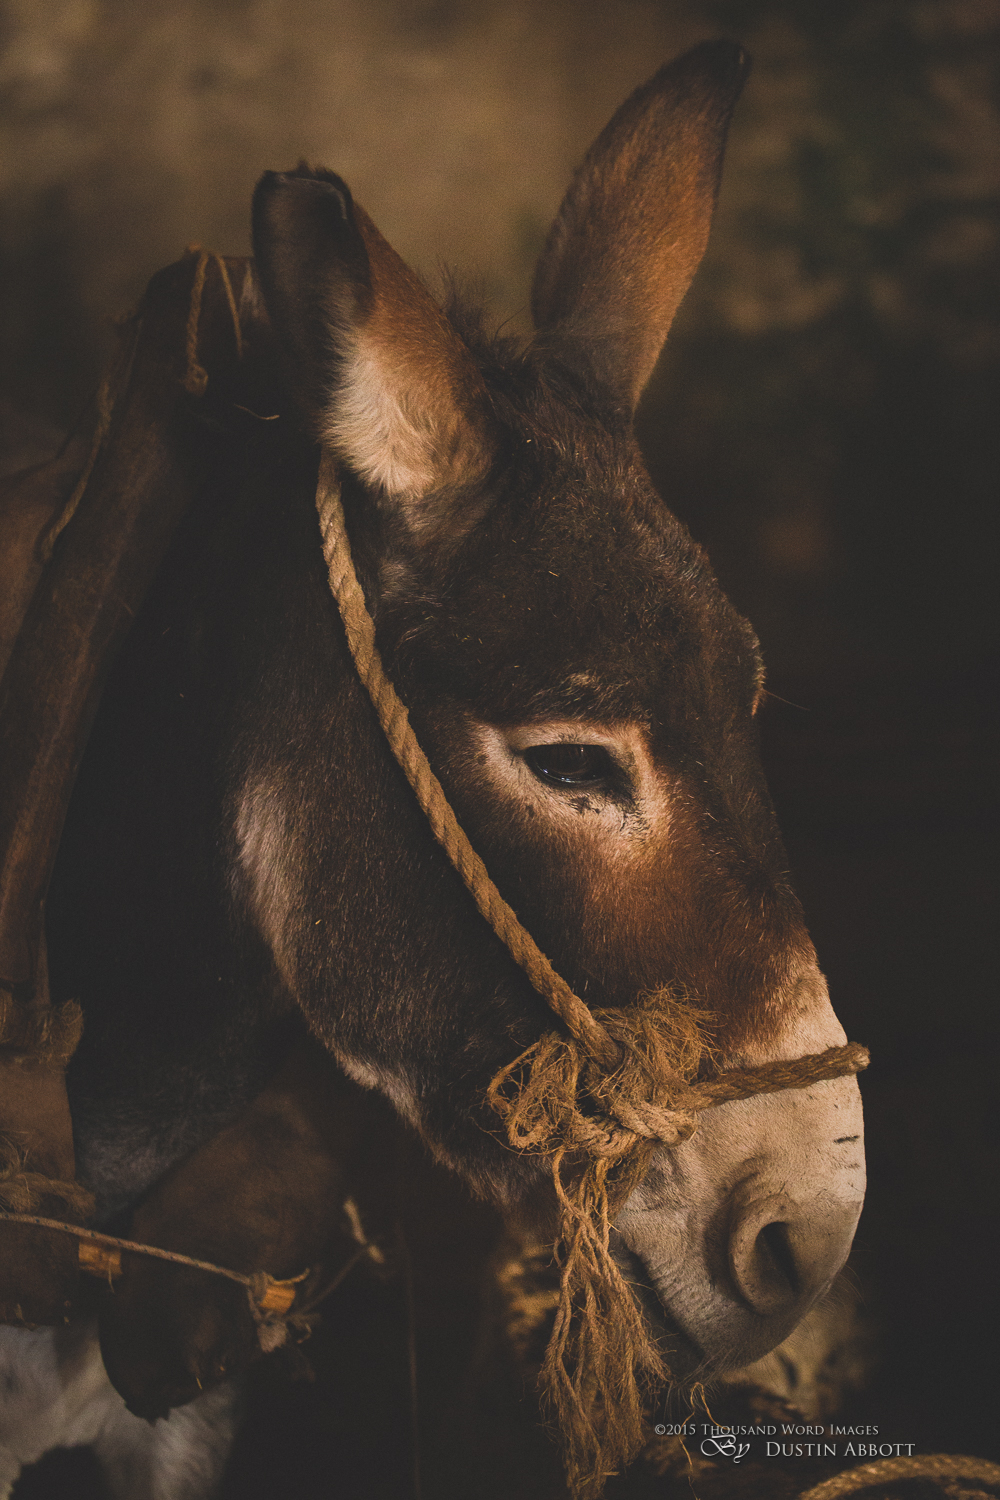 The Donkey of Bethlehem